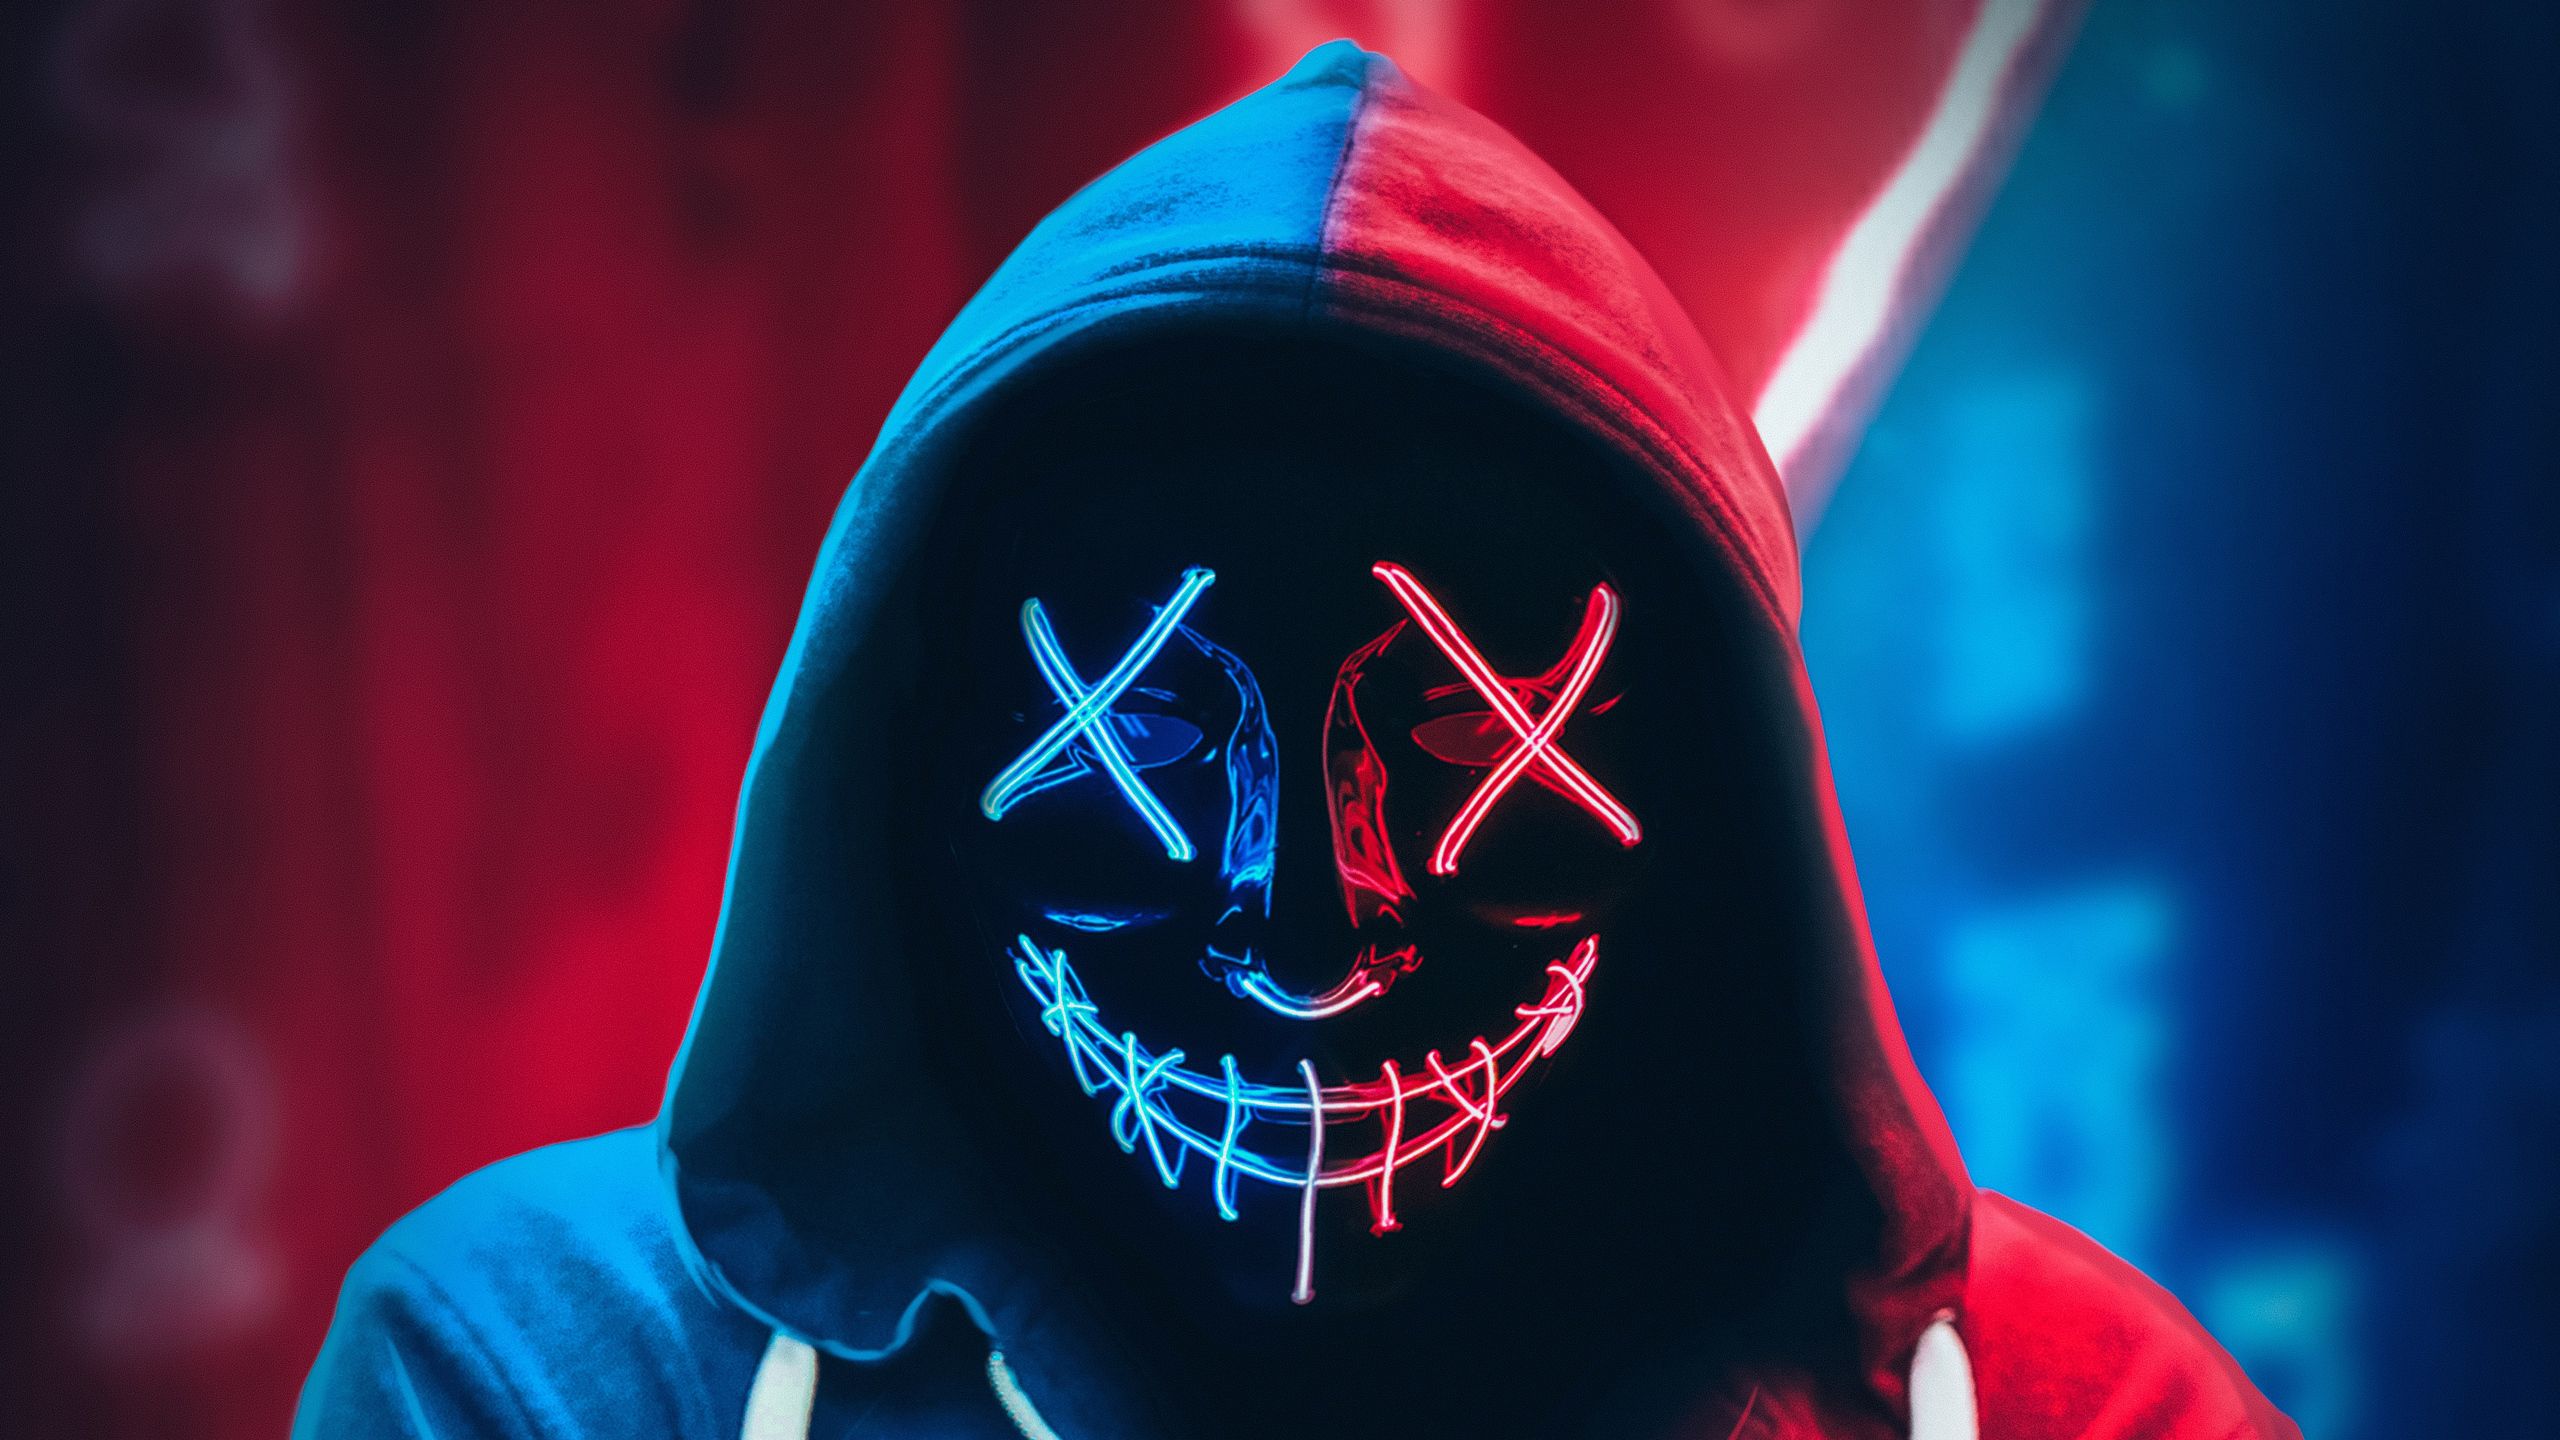 Neon Mask Hoodie 4k 1440P